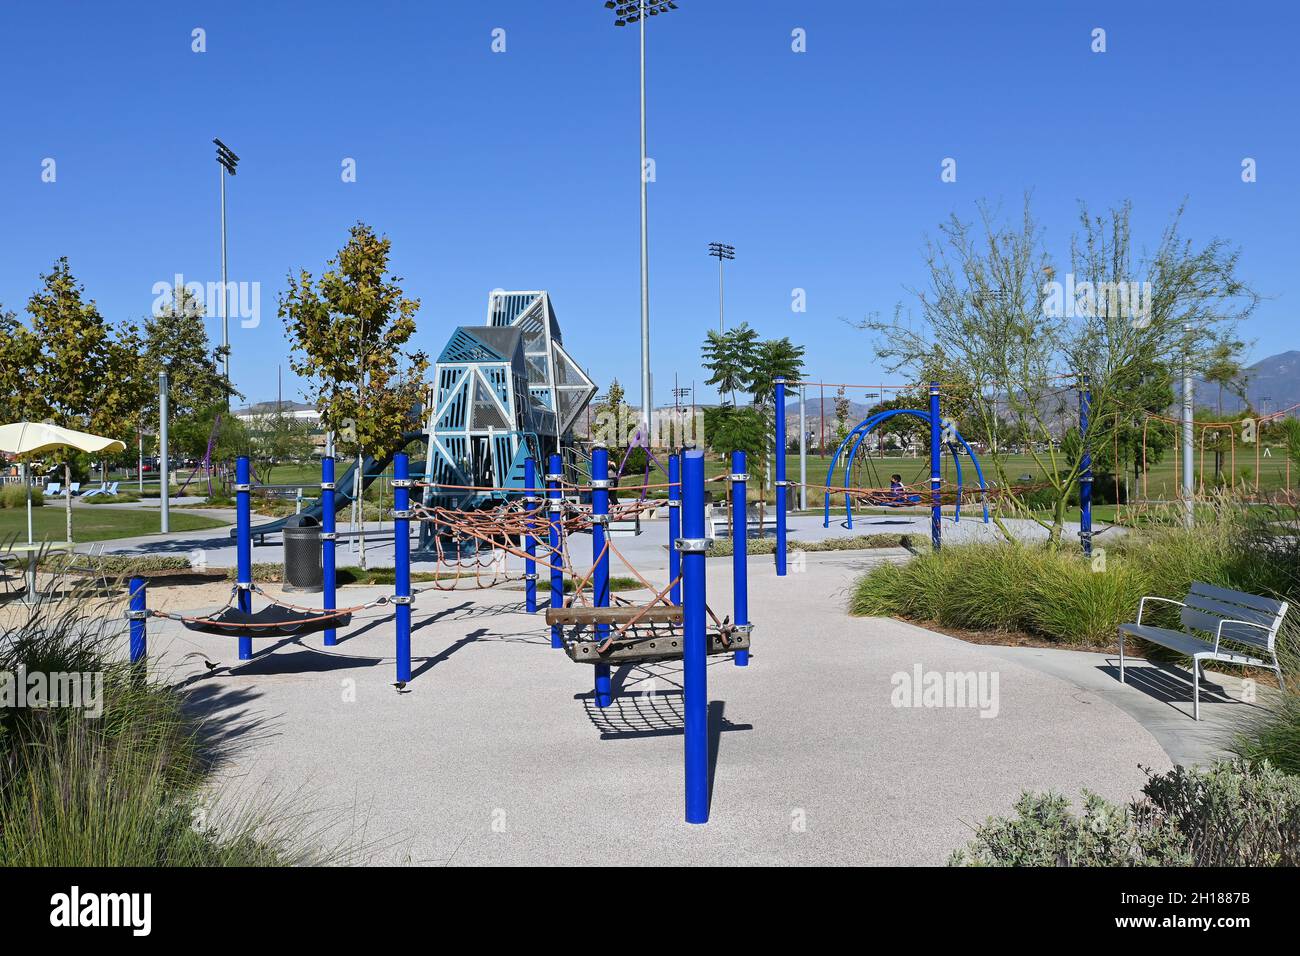 IRVINE, CALIFORNIA - 15 ottobre 2021: L'area giochi per bambini con varie attrezzature per bambini piccoli. Foto Stock